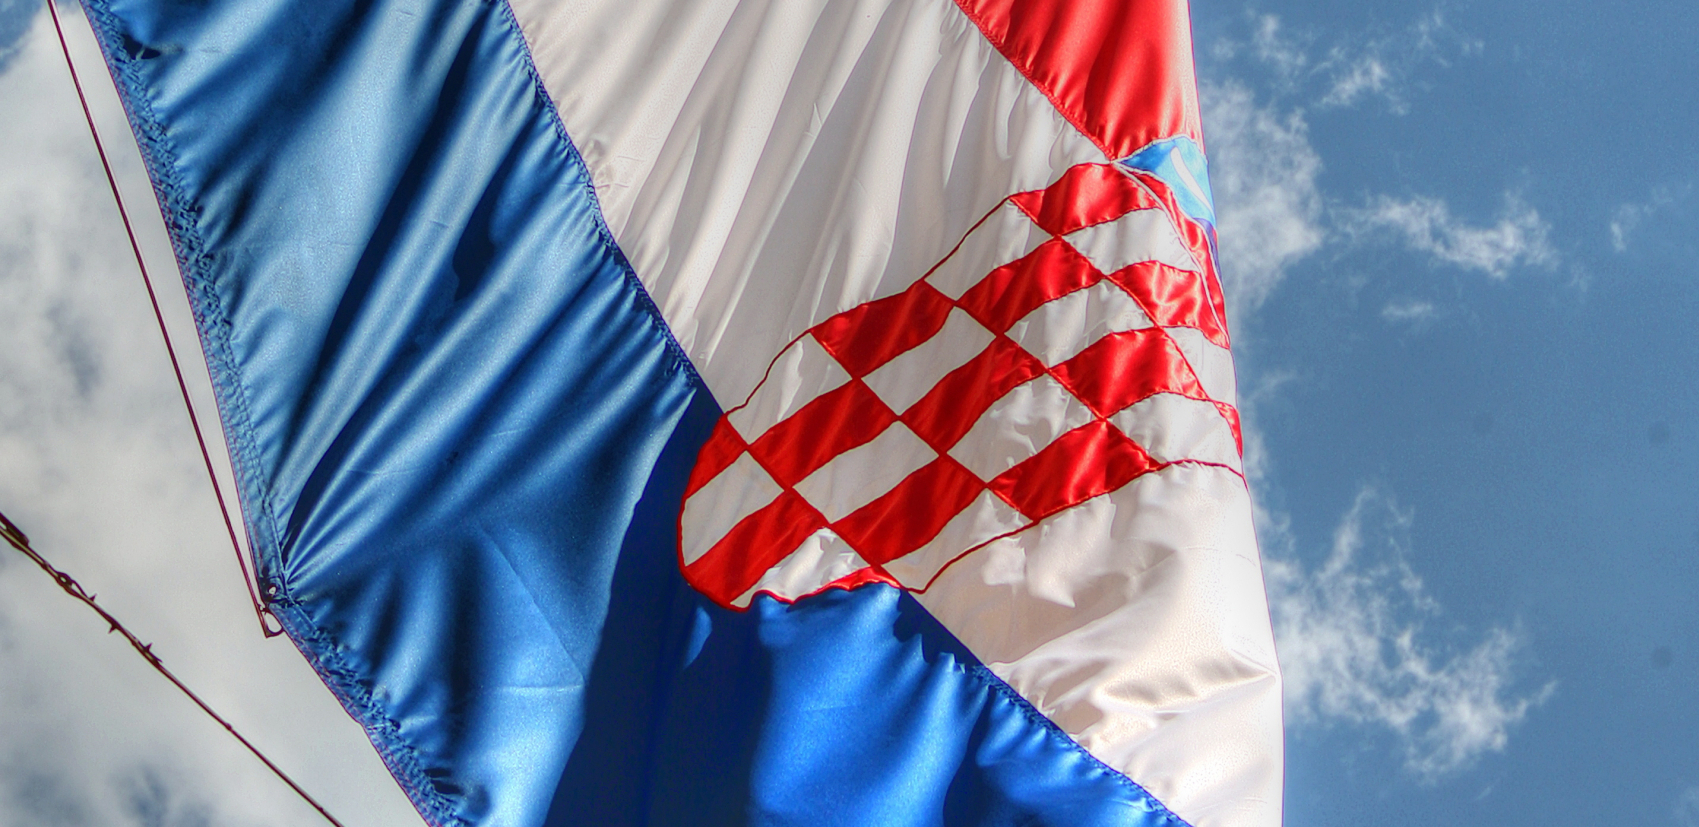 PROPAST LIJEPE NJIHOVE Stravičan udar inflacije, hrvatska privreda na izdisaju